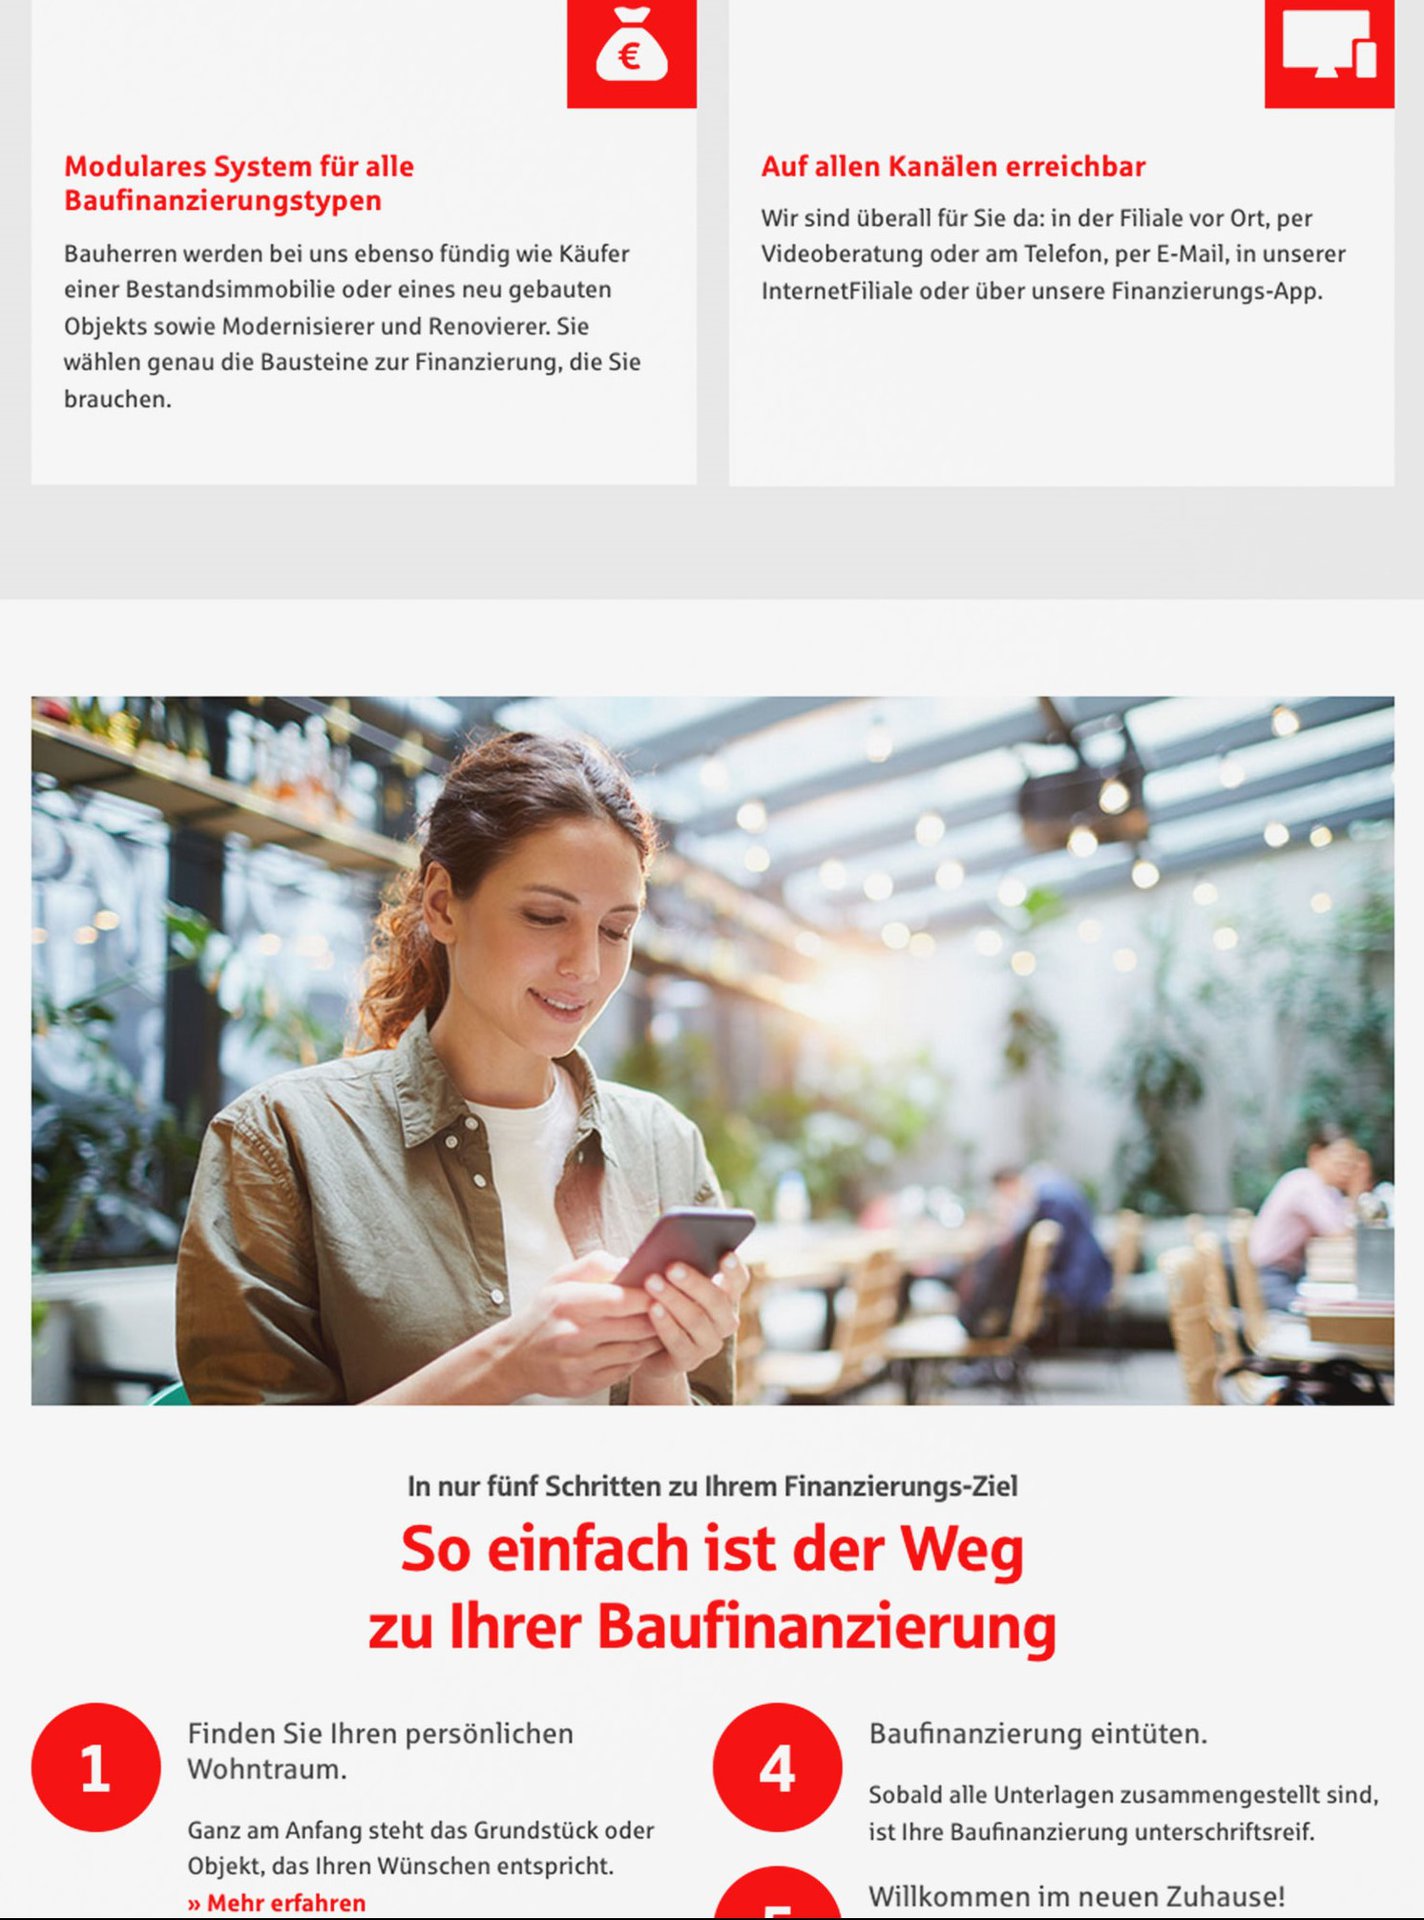 Ein Ausschnitt der Baufinanzierungs-Website der KSK Herzogtum Lauenburg zeigt eine Frau, die auf ihr Smartphone schaut